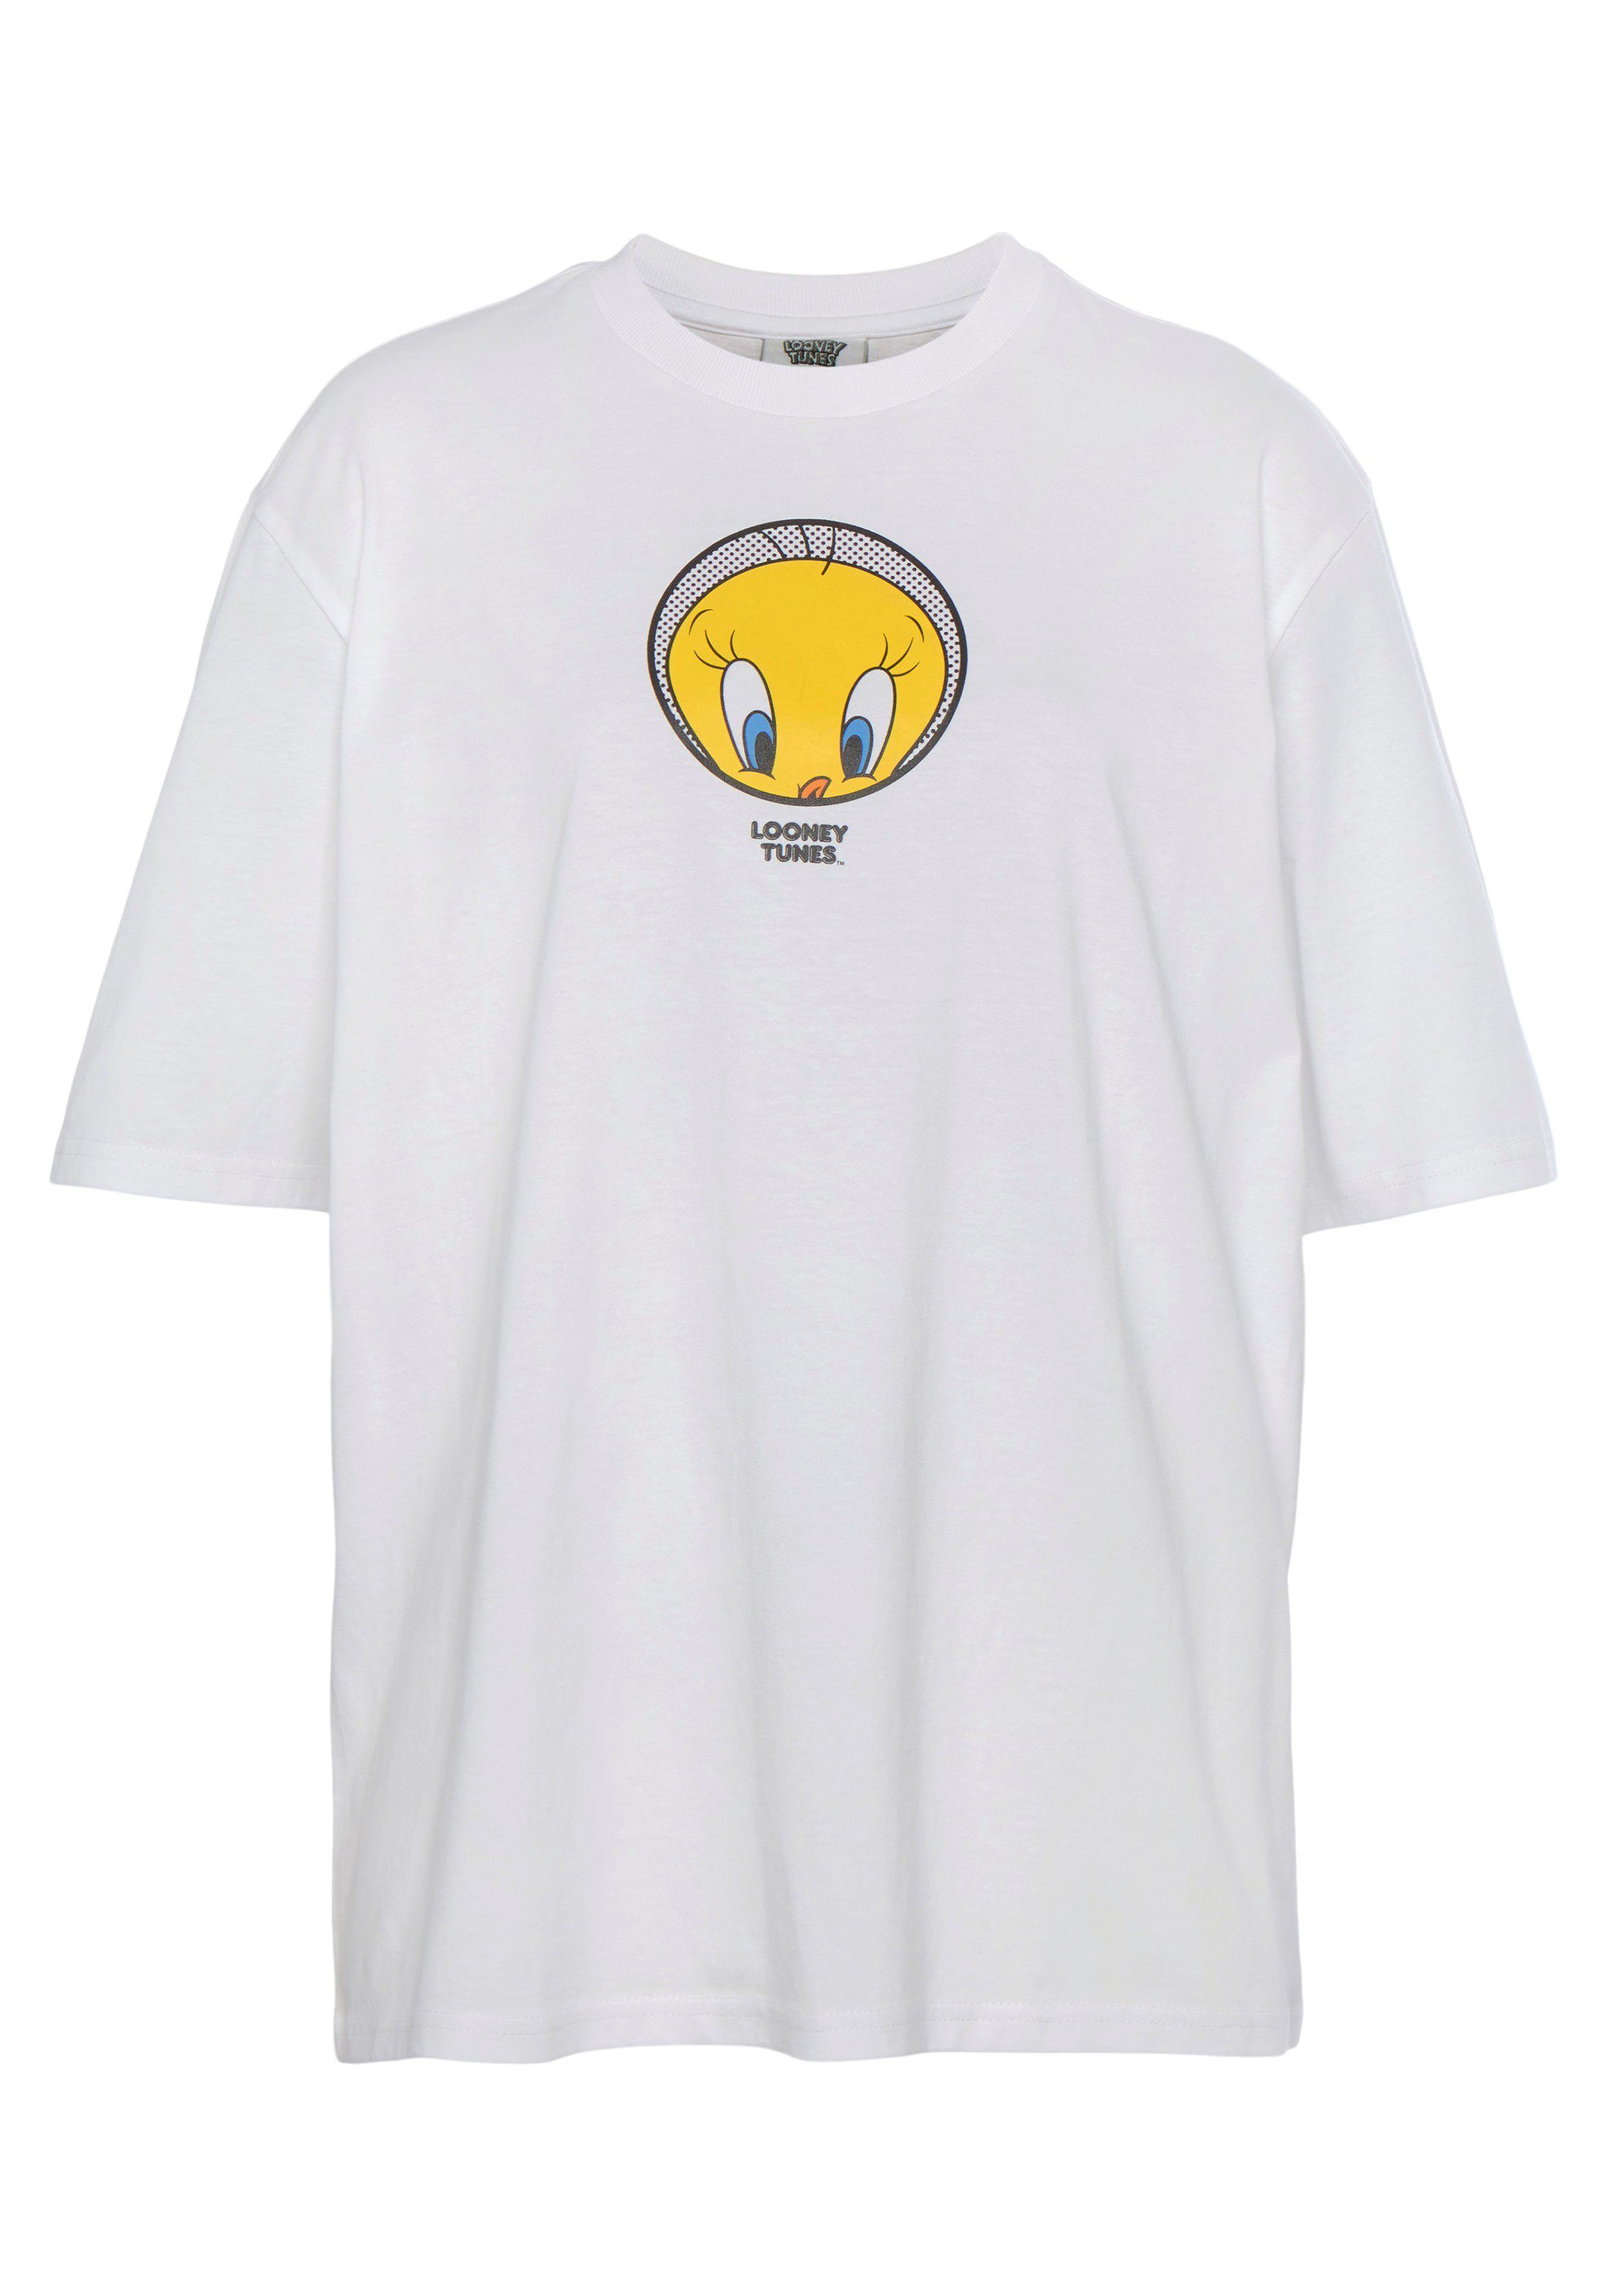 T-Shirt Tweety T-Shirt New white York Capelli